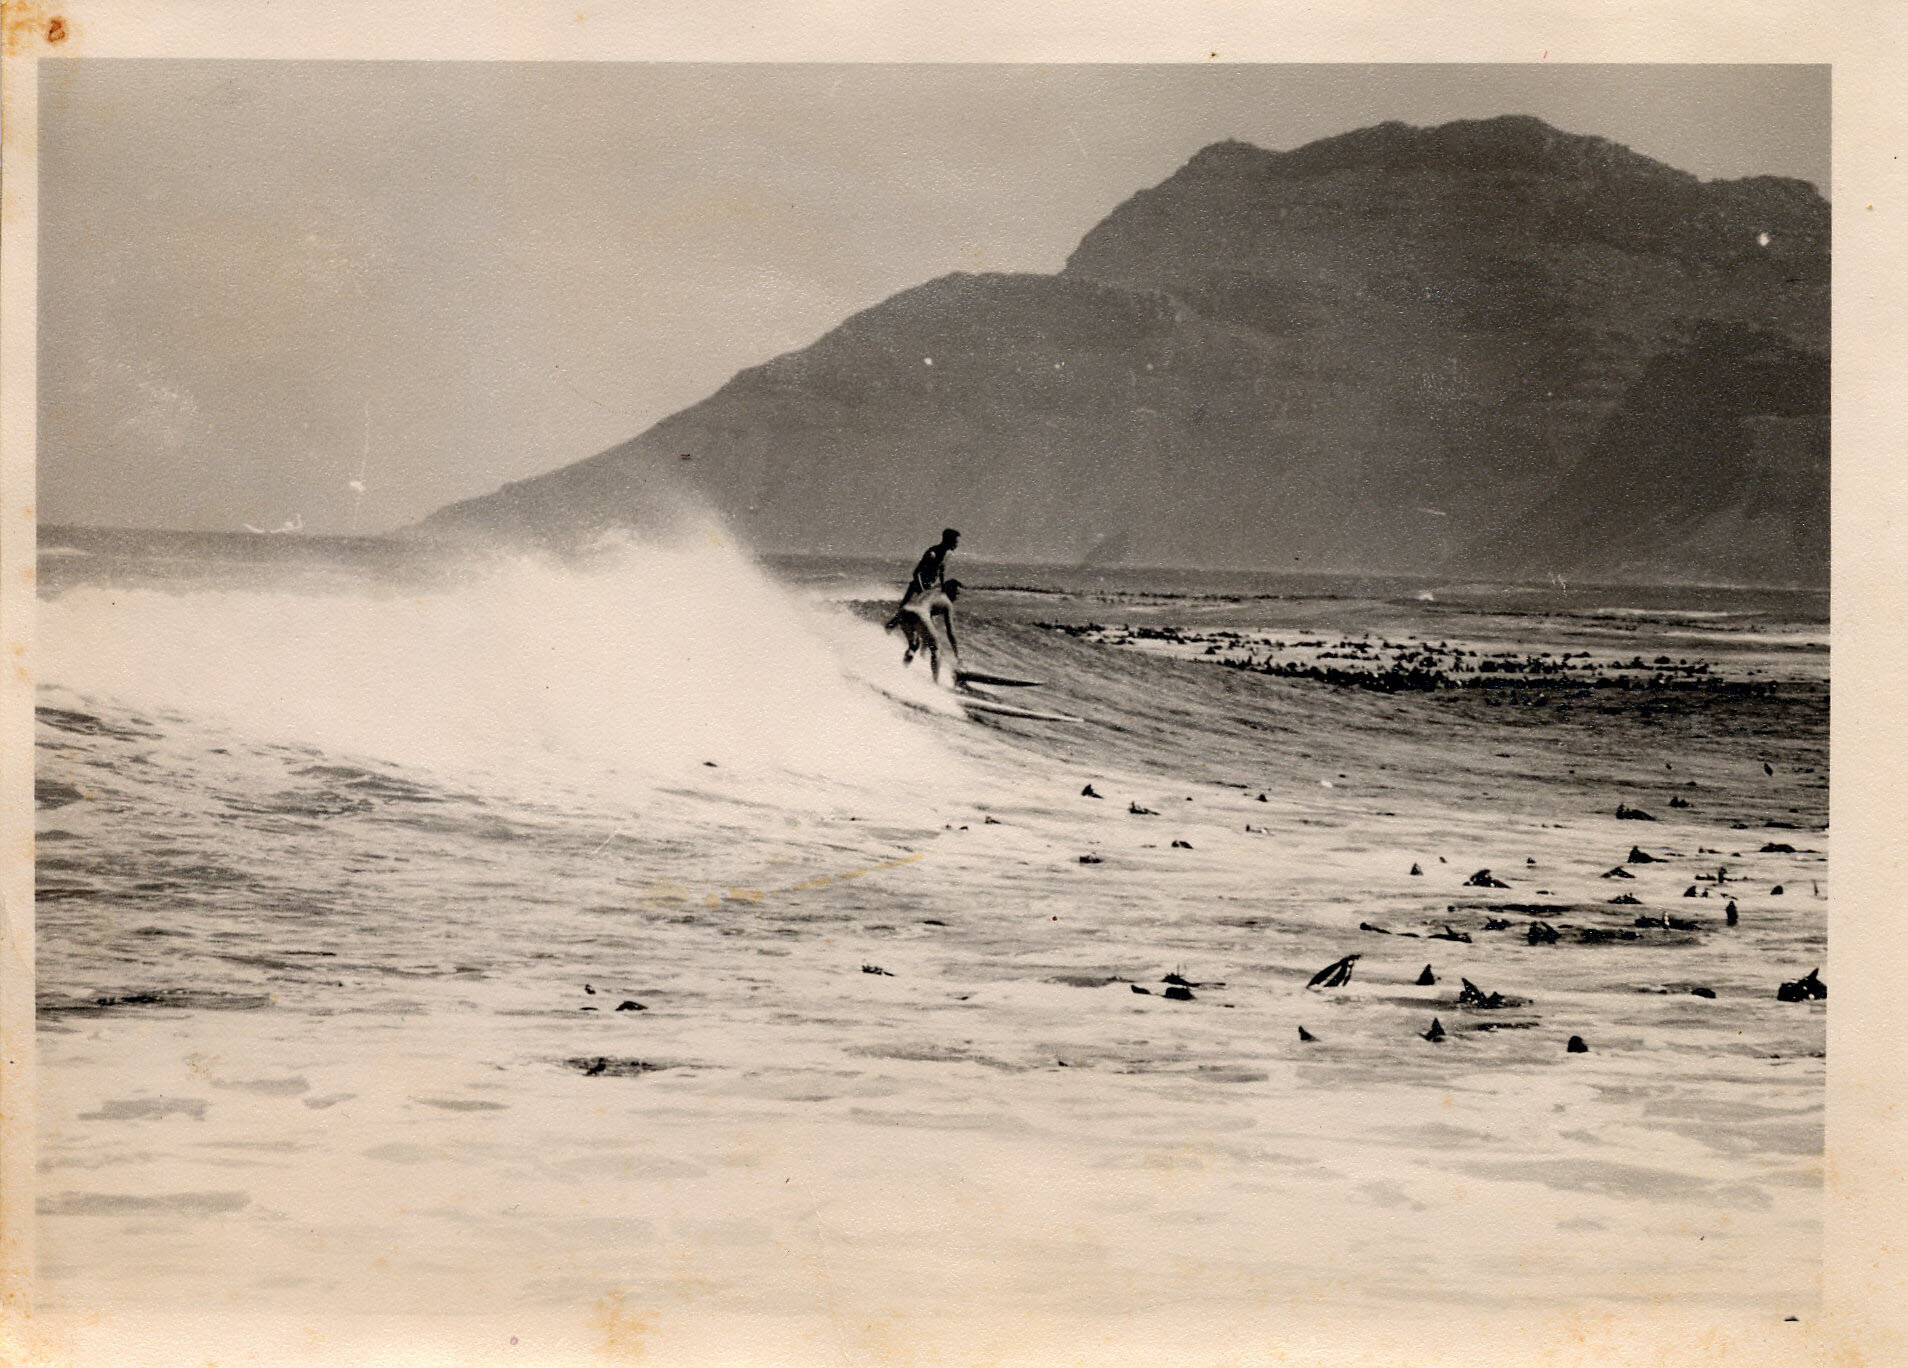 Metz 10 - 1960 - Dick, John Surfing Capetown 1959 - 406 K.jpg